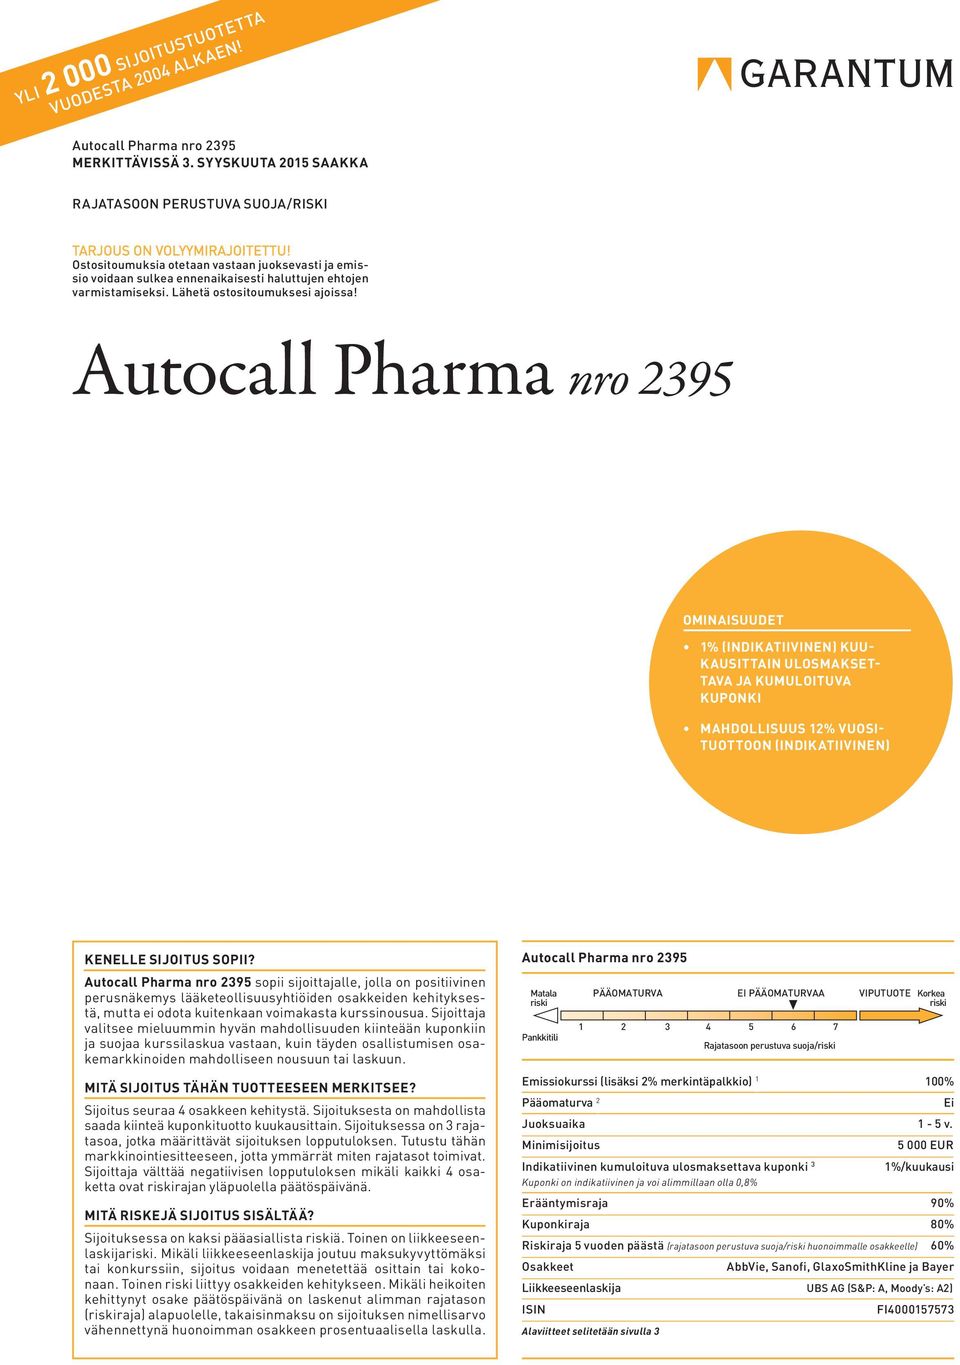 Autocall Pharma nro 2395 OMINAISUUDET 1% (INDIKATIIVINEN) KUU- KAUSITTAIN ULOSMAKSET- TAVA JA KUMULOITUVA KUPONKI MAHDOLLISUUS 12% VUOSI- TUOTTOON (INDIKATIIVINEN) KENELLE SIJOITUS SOPII?